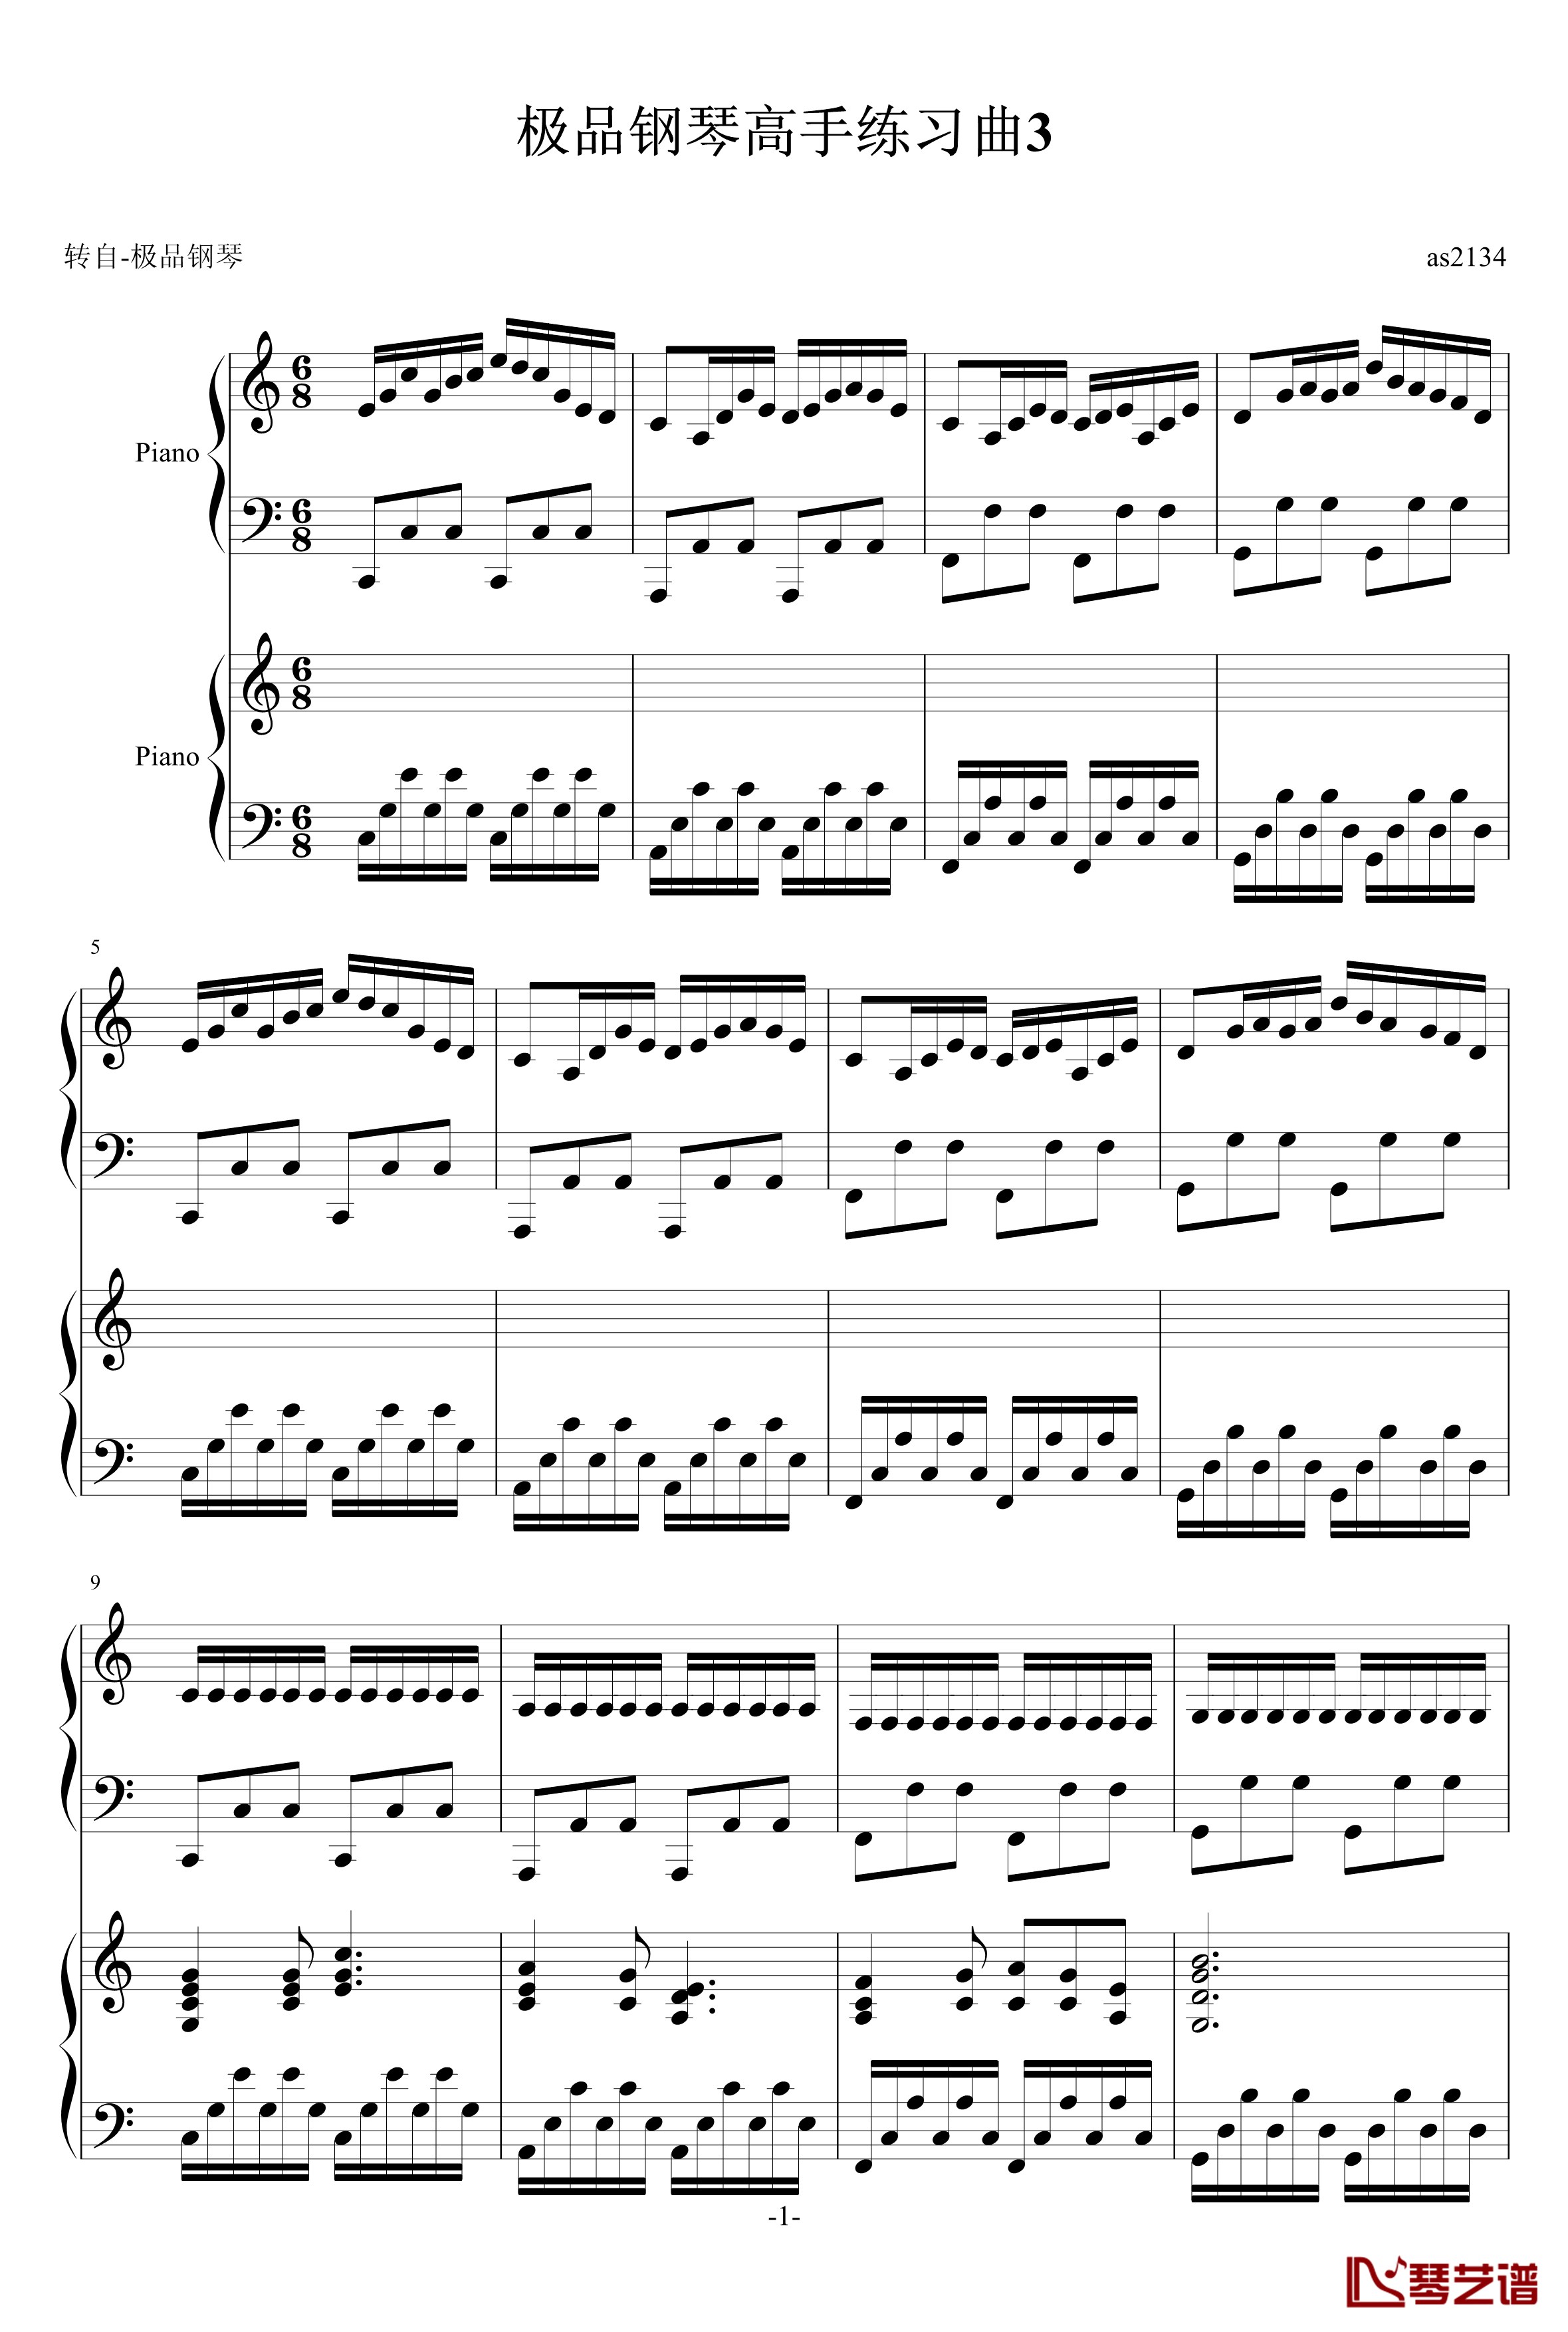 极品钢琴高手练习曲3钢琴谱-as21341